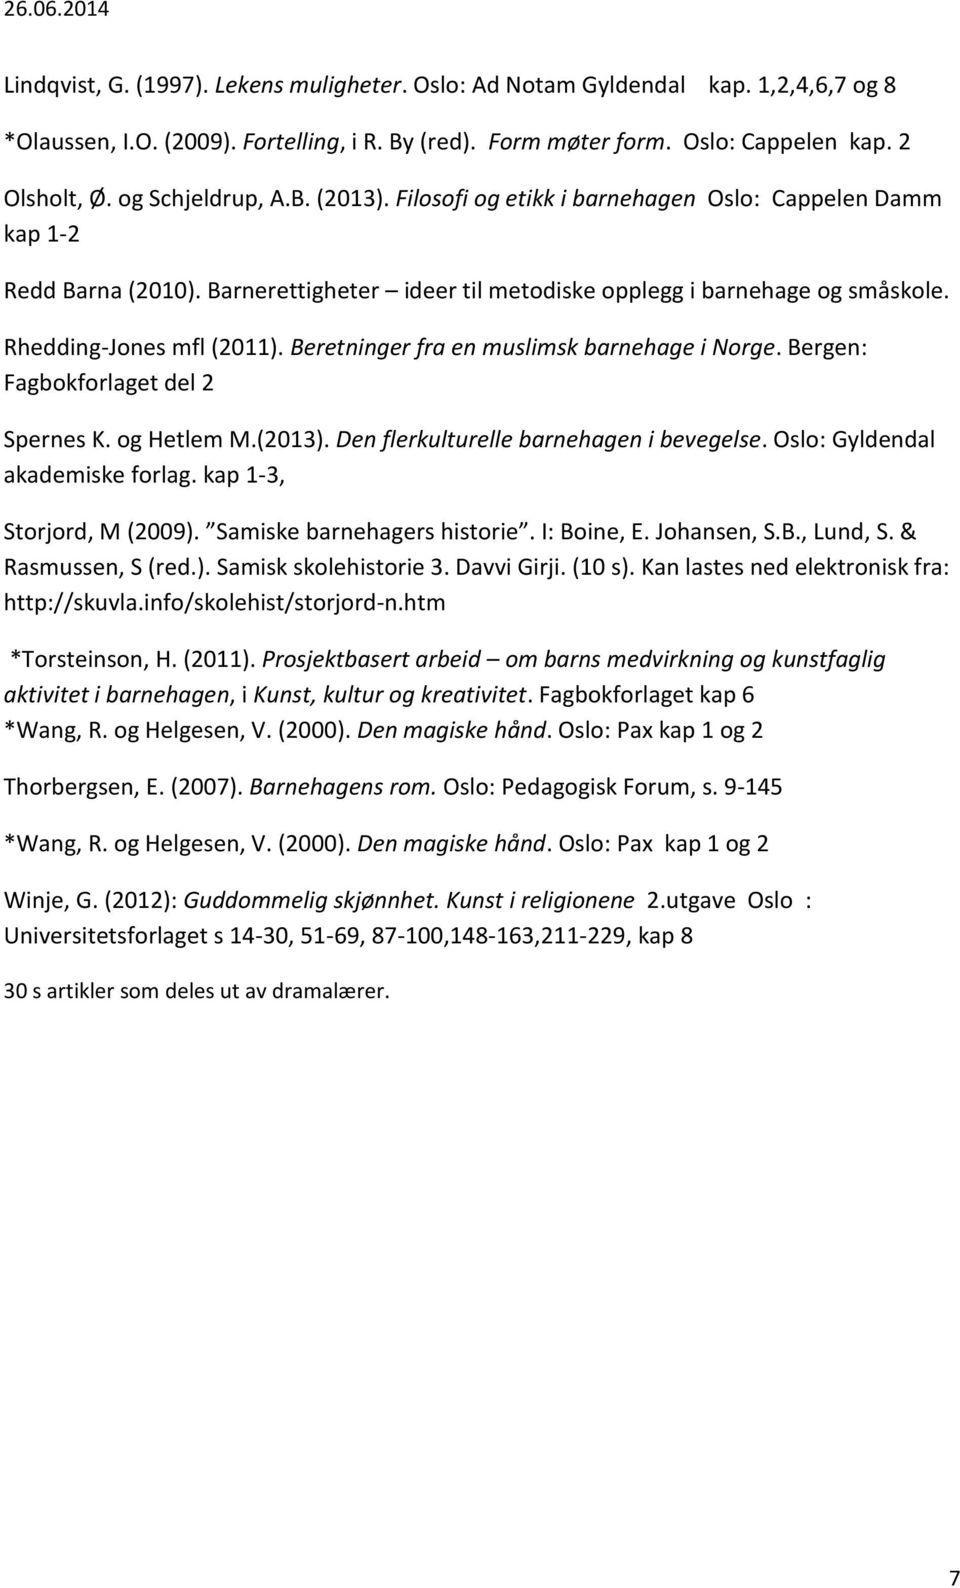 Rhedding-Jones mfl (2011). Beretninger fra en muslimsk barnehage i Norge. Bergen: Fagbokforlaget del 2 Spernes K. og Hetlem M.(2013). Den flerkulturelle barnehagen i bevegelse.